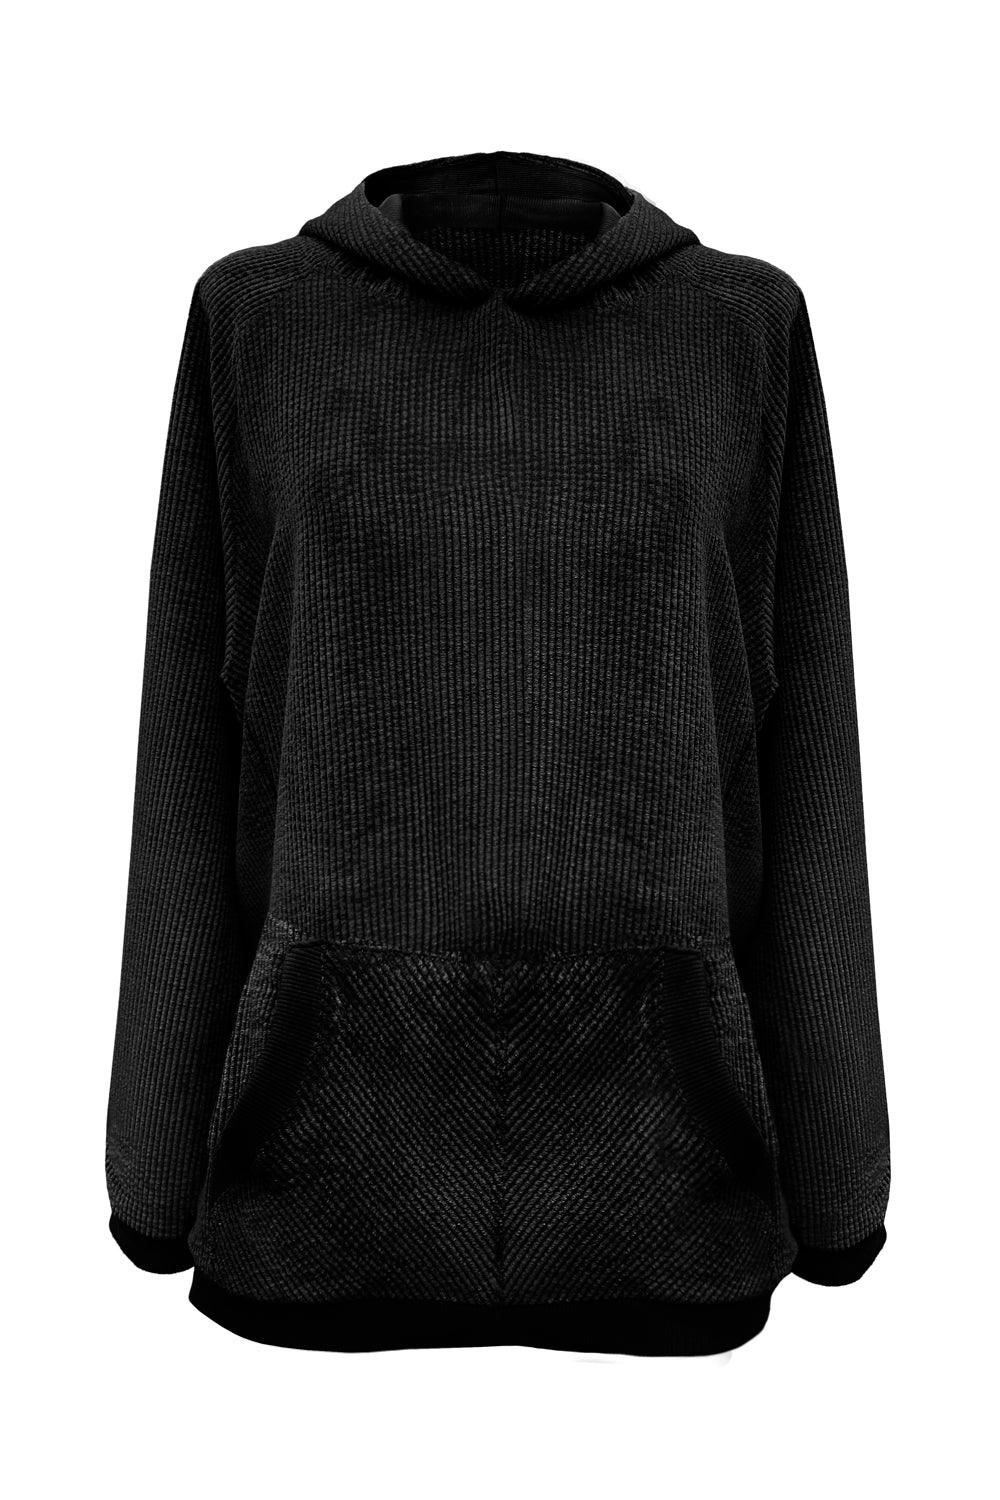 Velveteen Black hoodie - Sweater by yesUndress. Shop on yesUndress